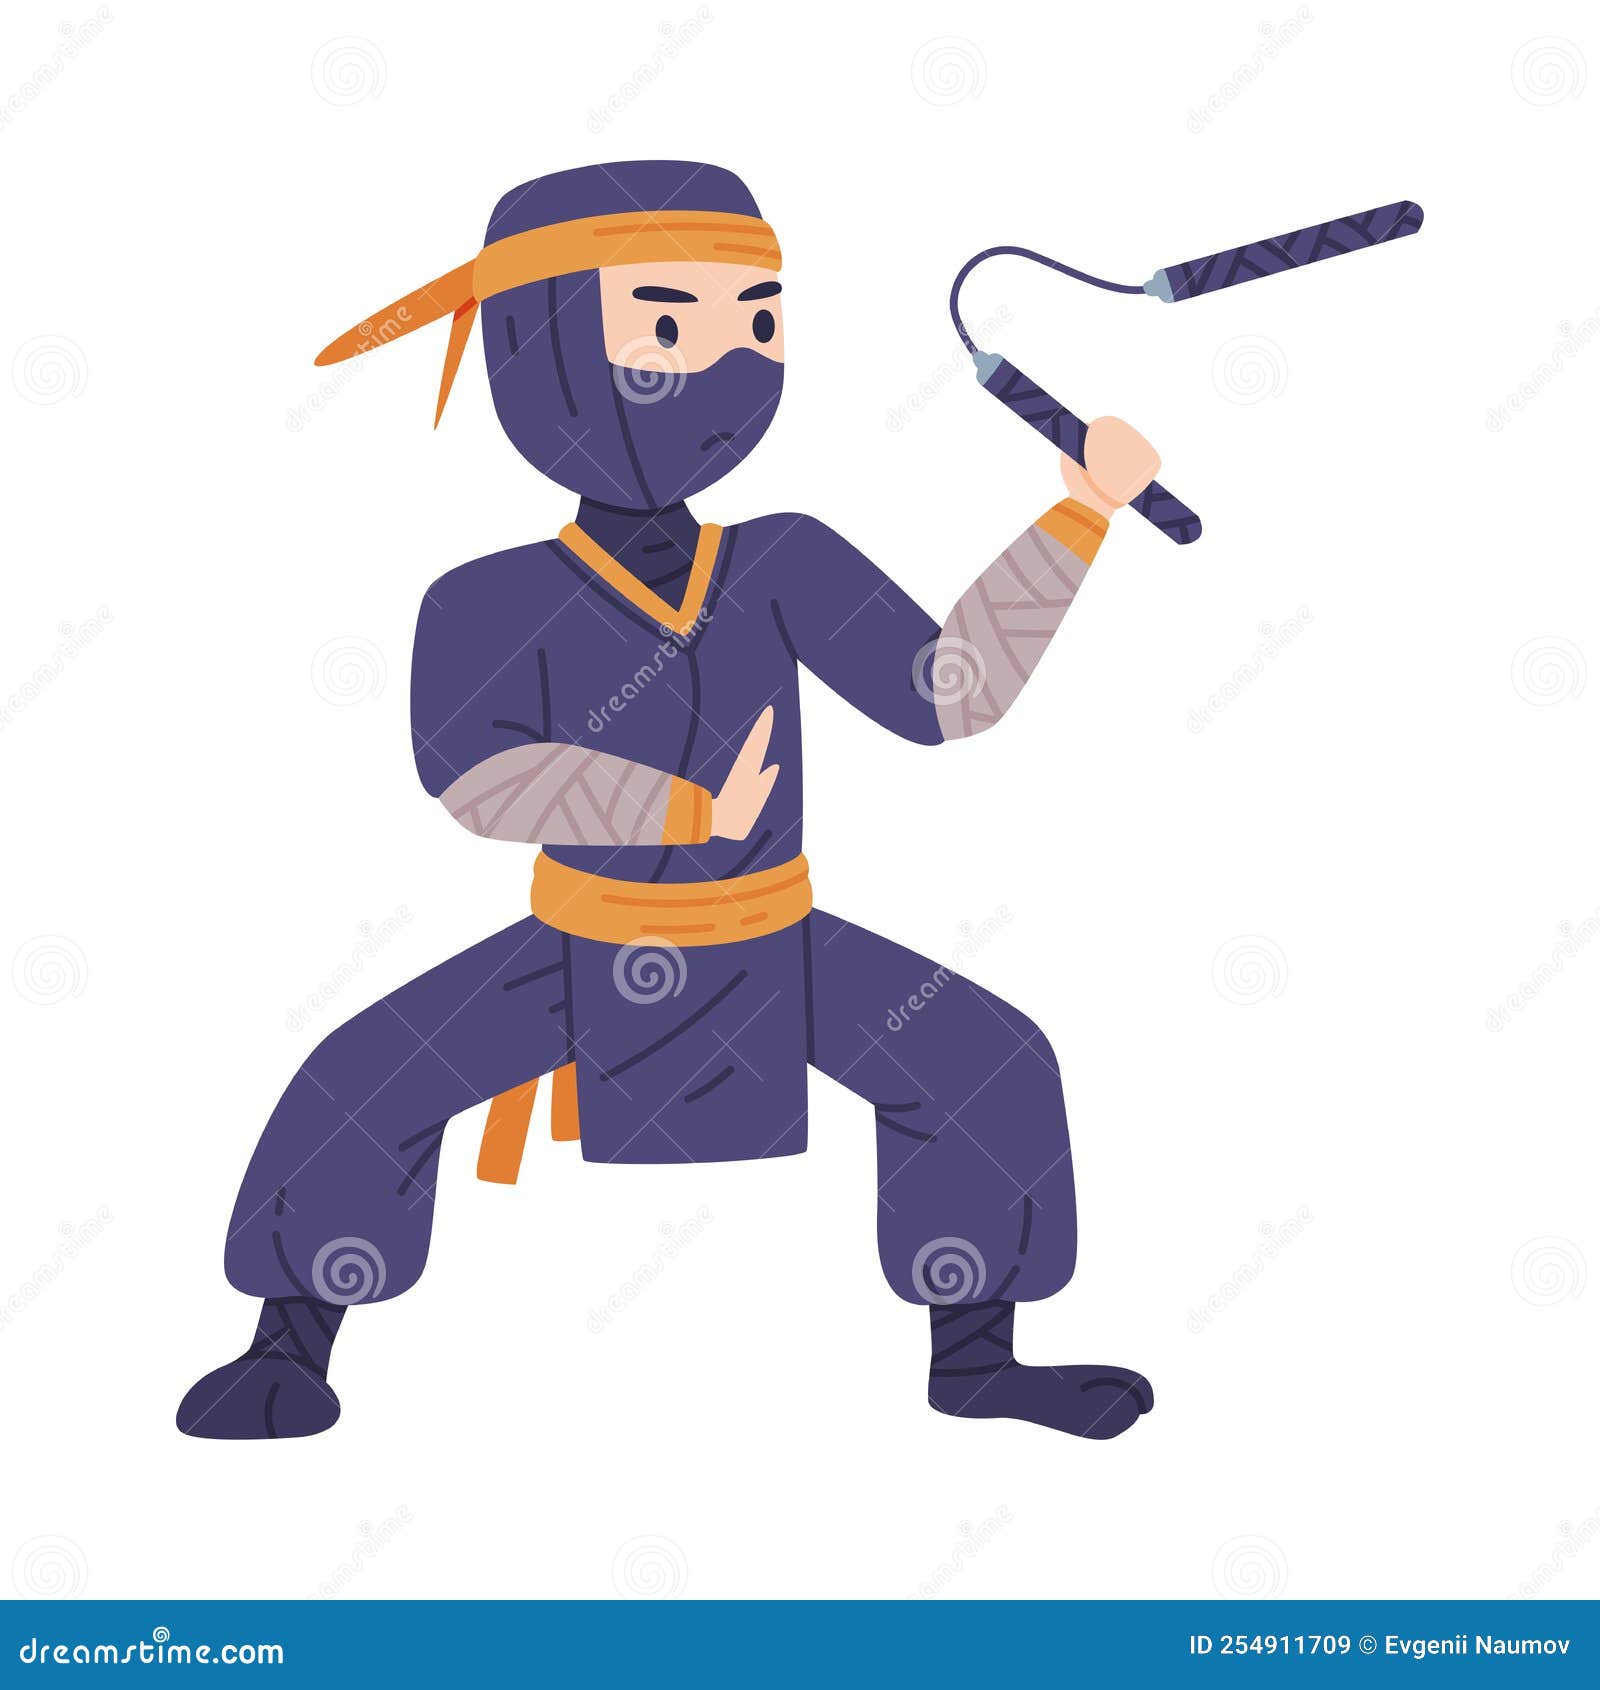 Vetores de Personagem De Assassino Ninja Em Um Traje Completo Preto Lutando  Com Nunchaku Em Suas Mãos Arte Marcial Japonesa Vector Ilustração e mais  imagens de Adulto - iStock